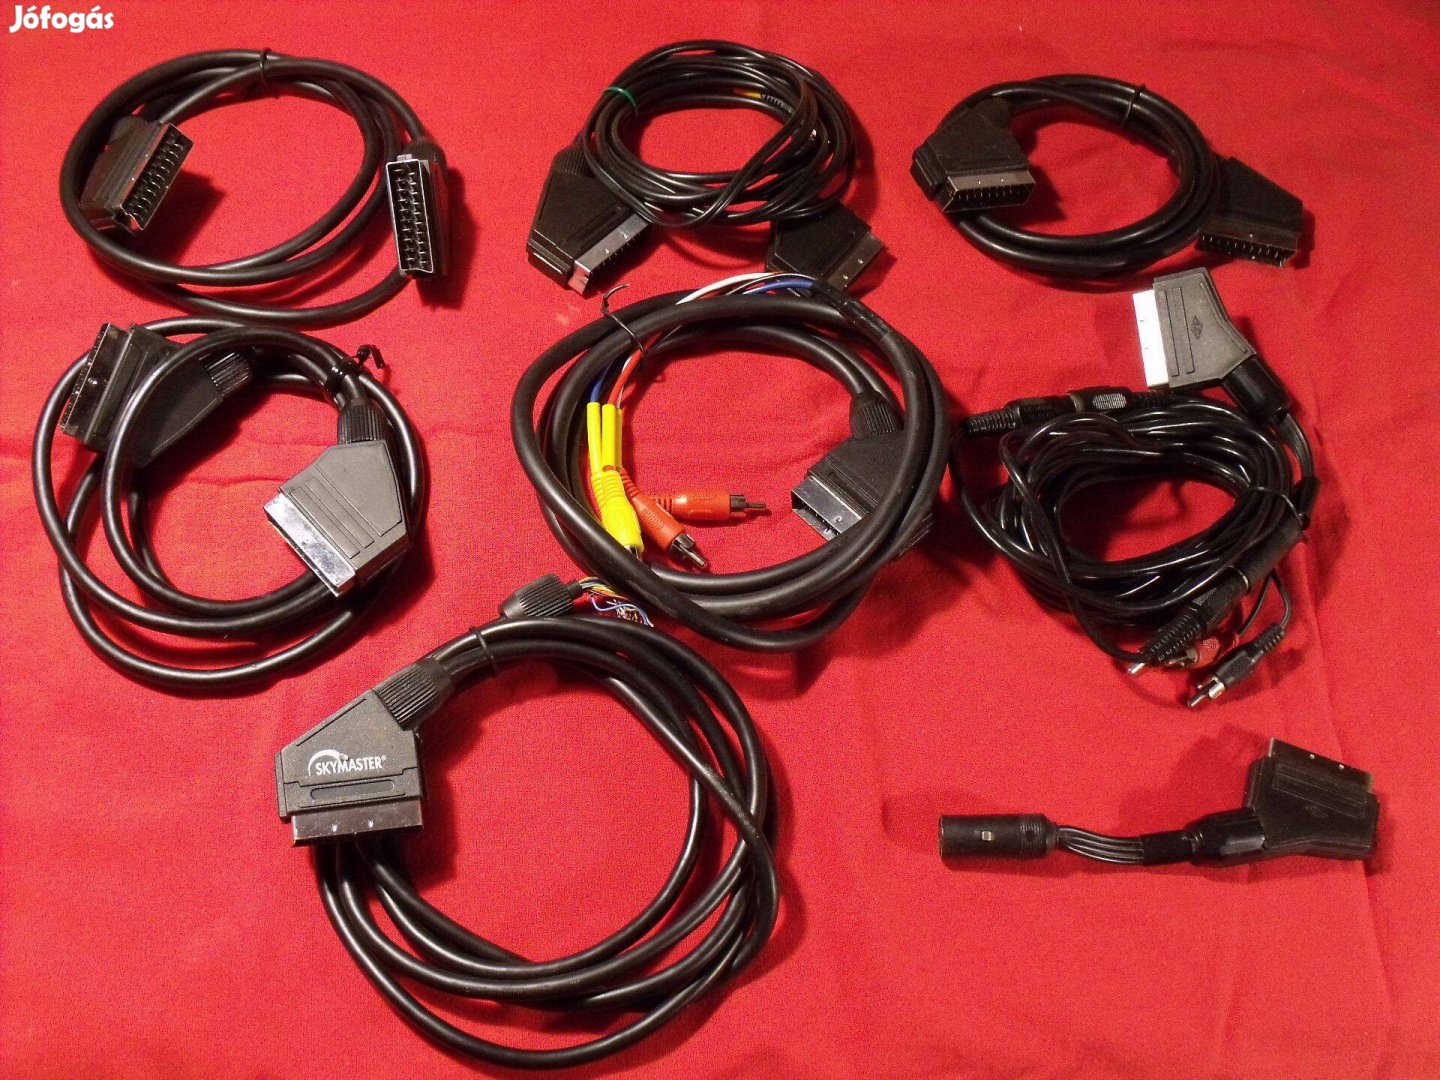 Örökség, házimozi: SCART kábel készlet, 8db-os. Sony, JVC, Panasonic